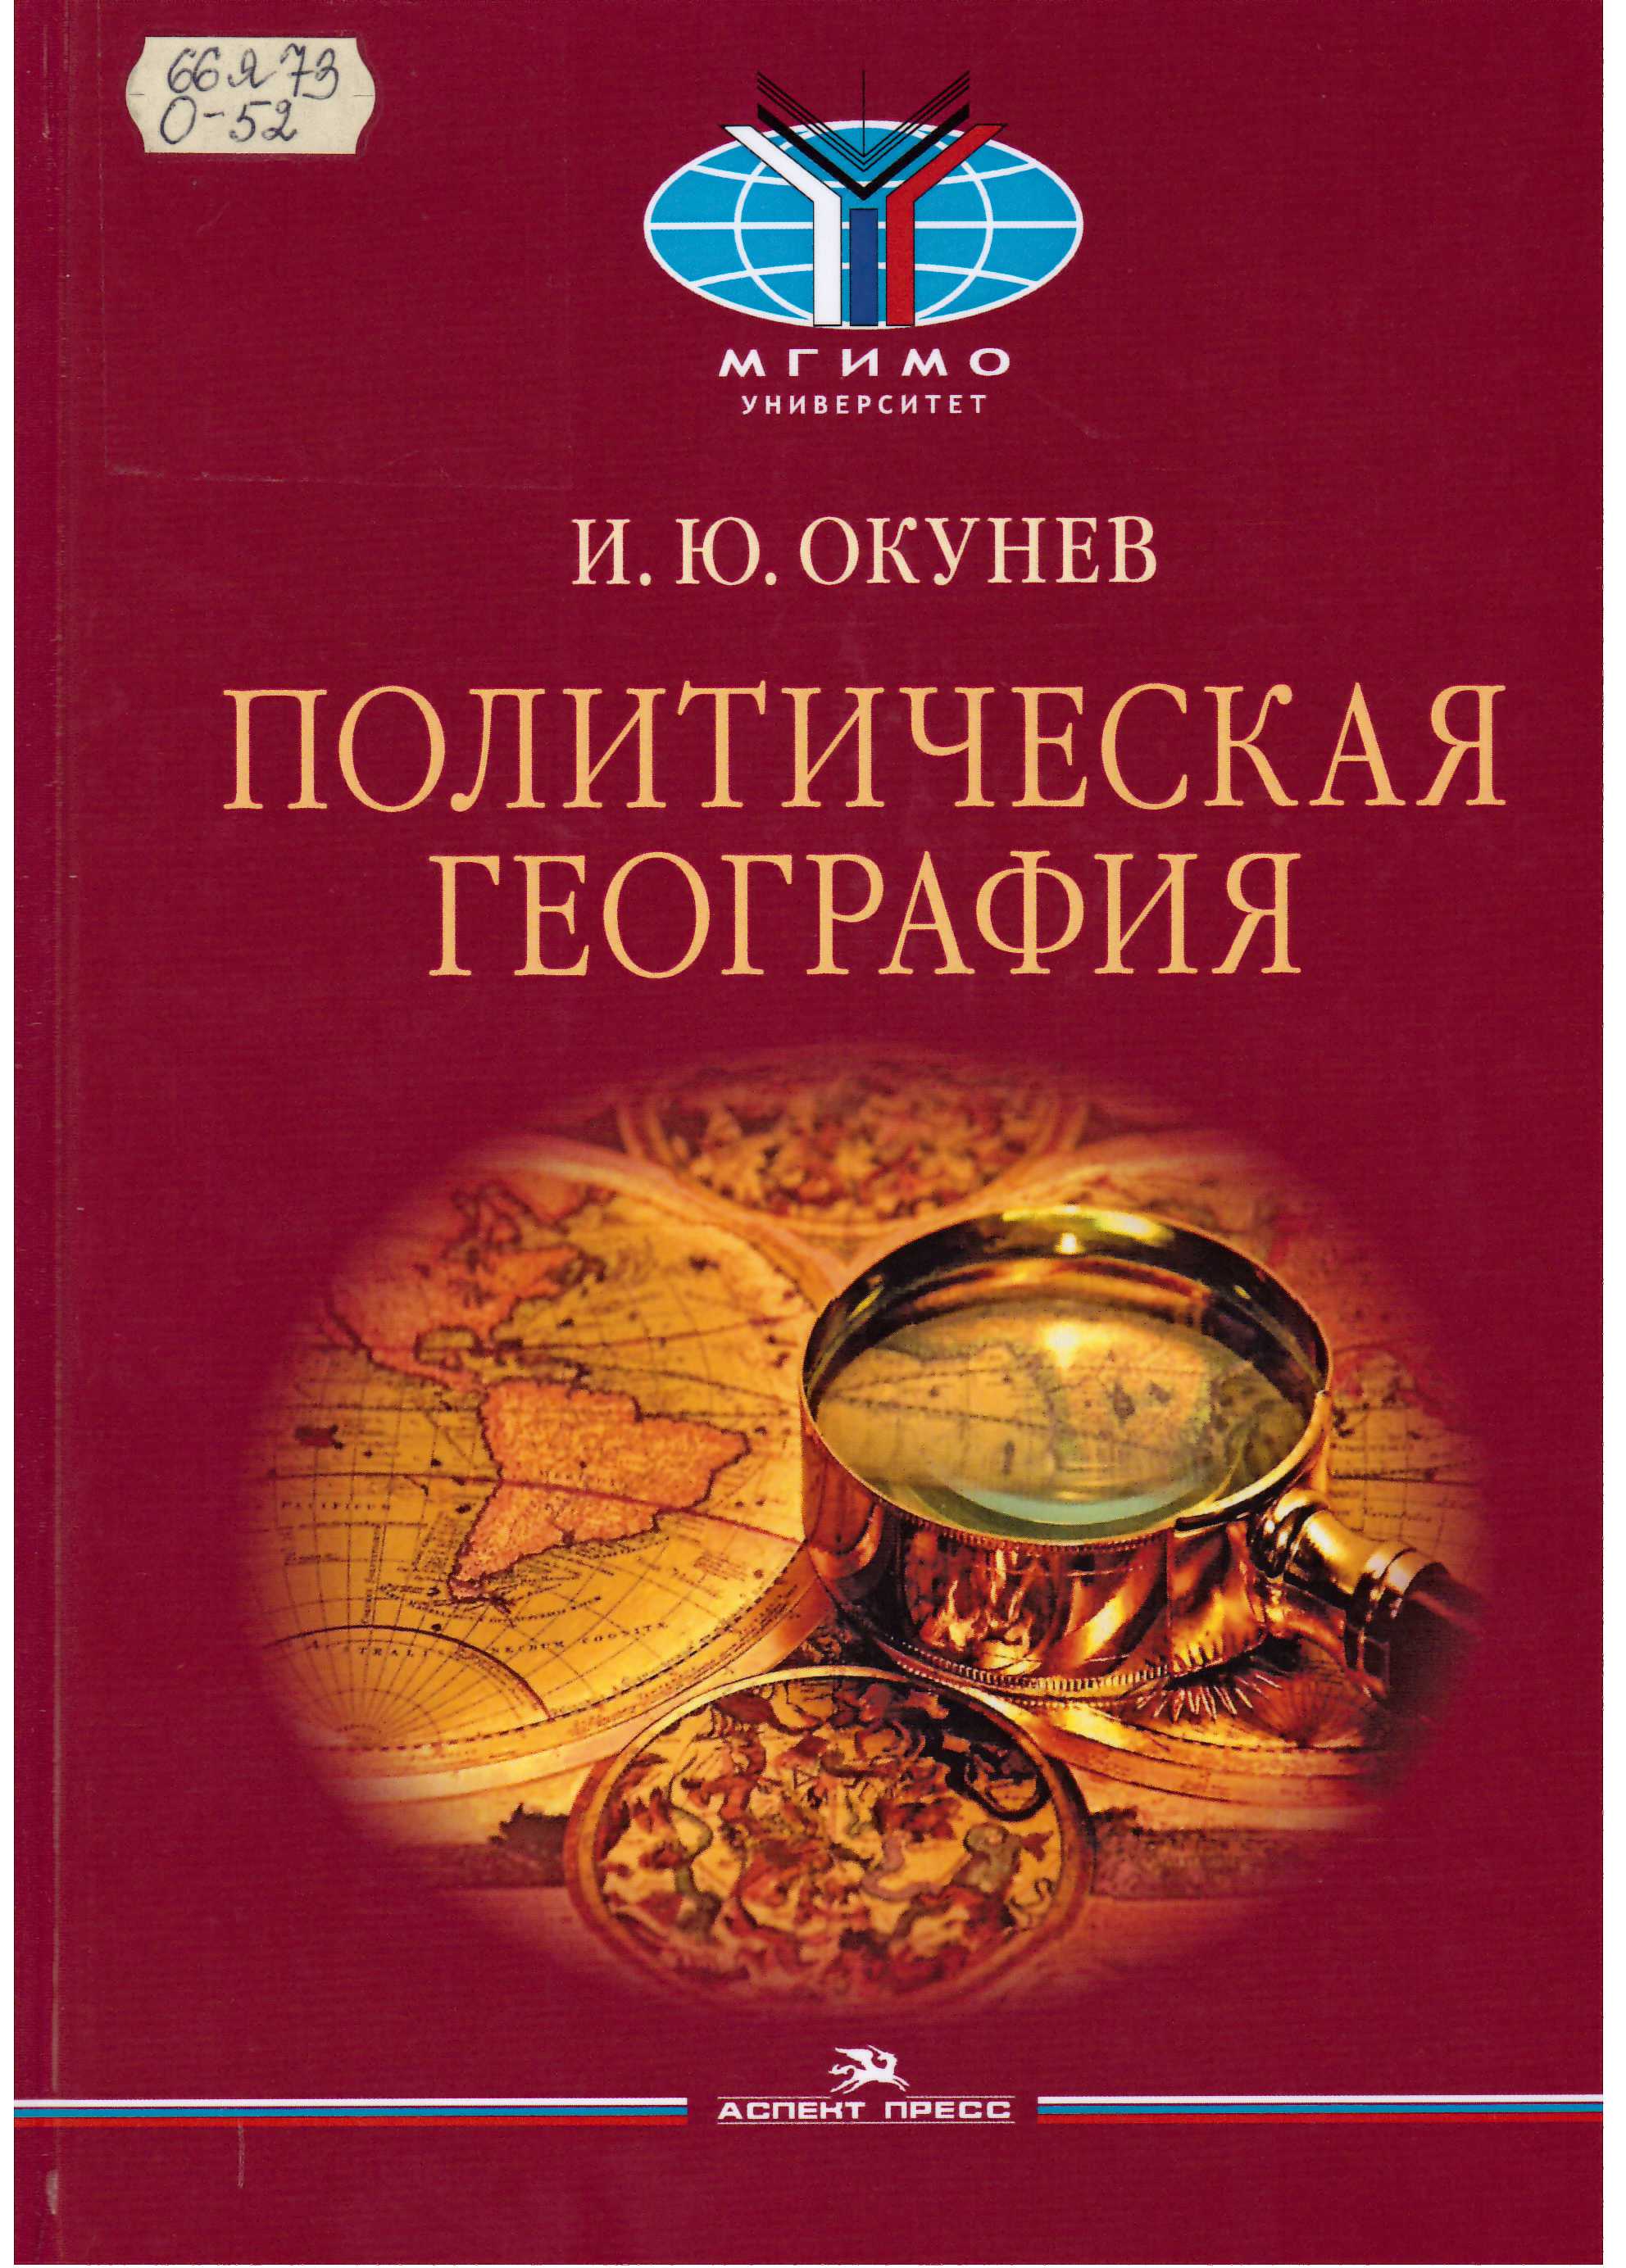 Окунев, И. Ю. Политическая география: учебник для вузов